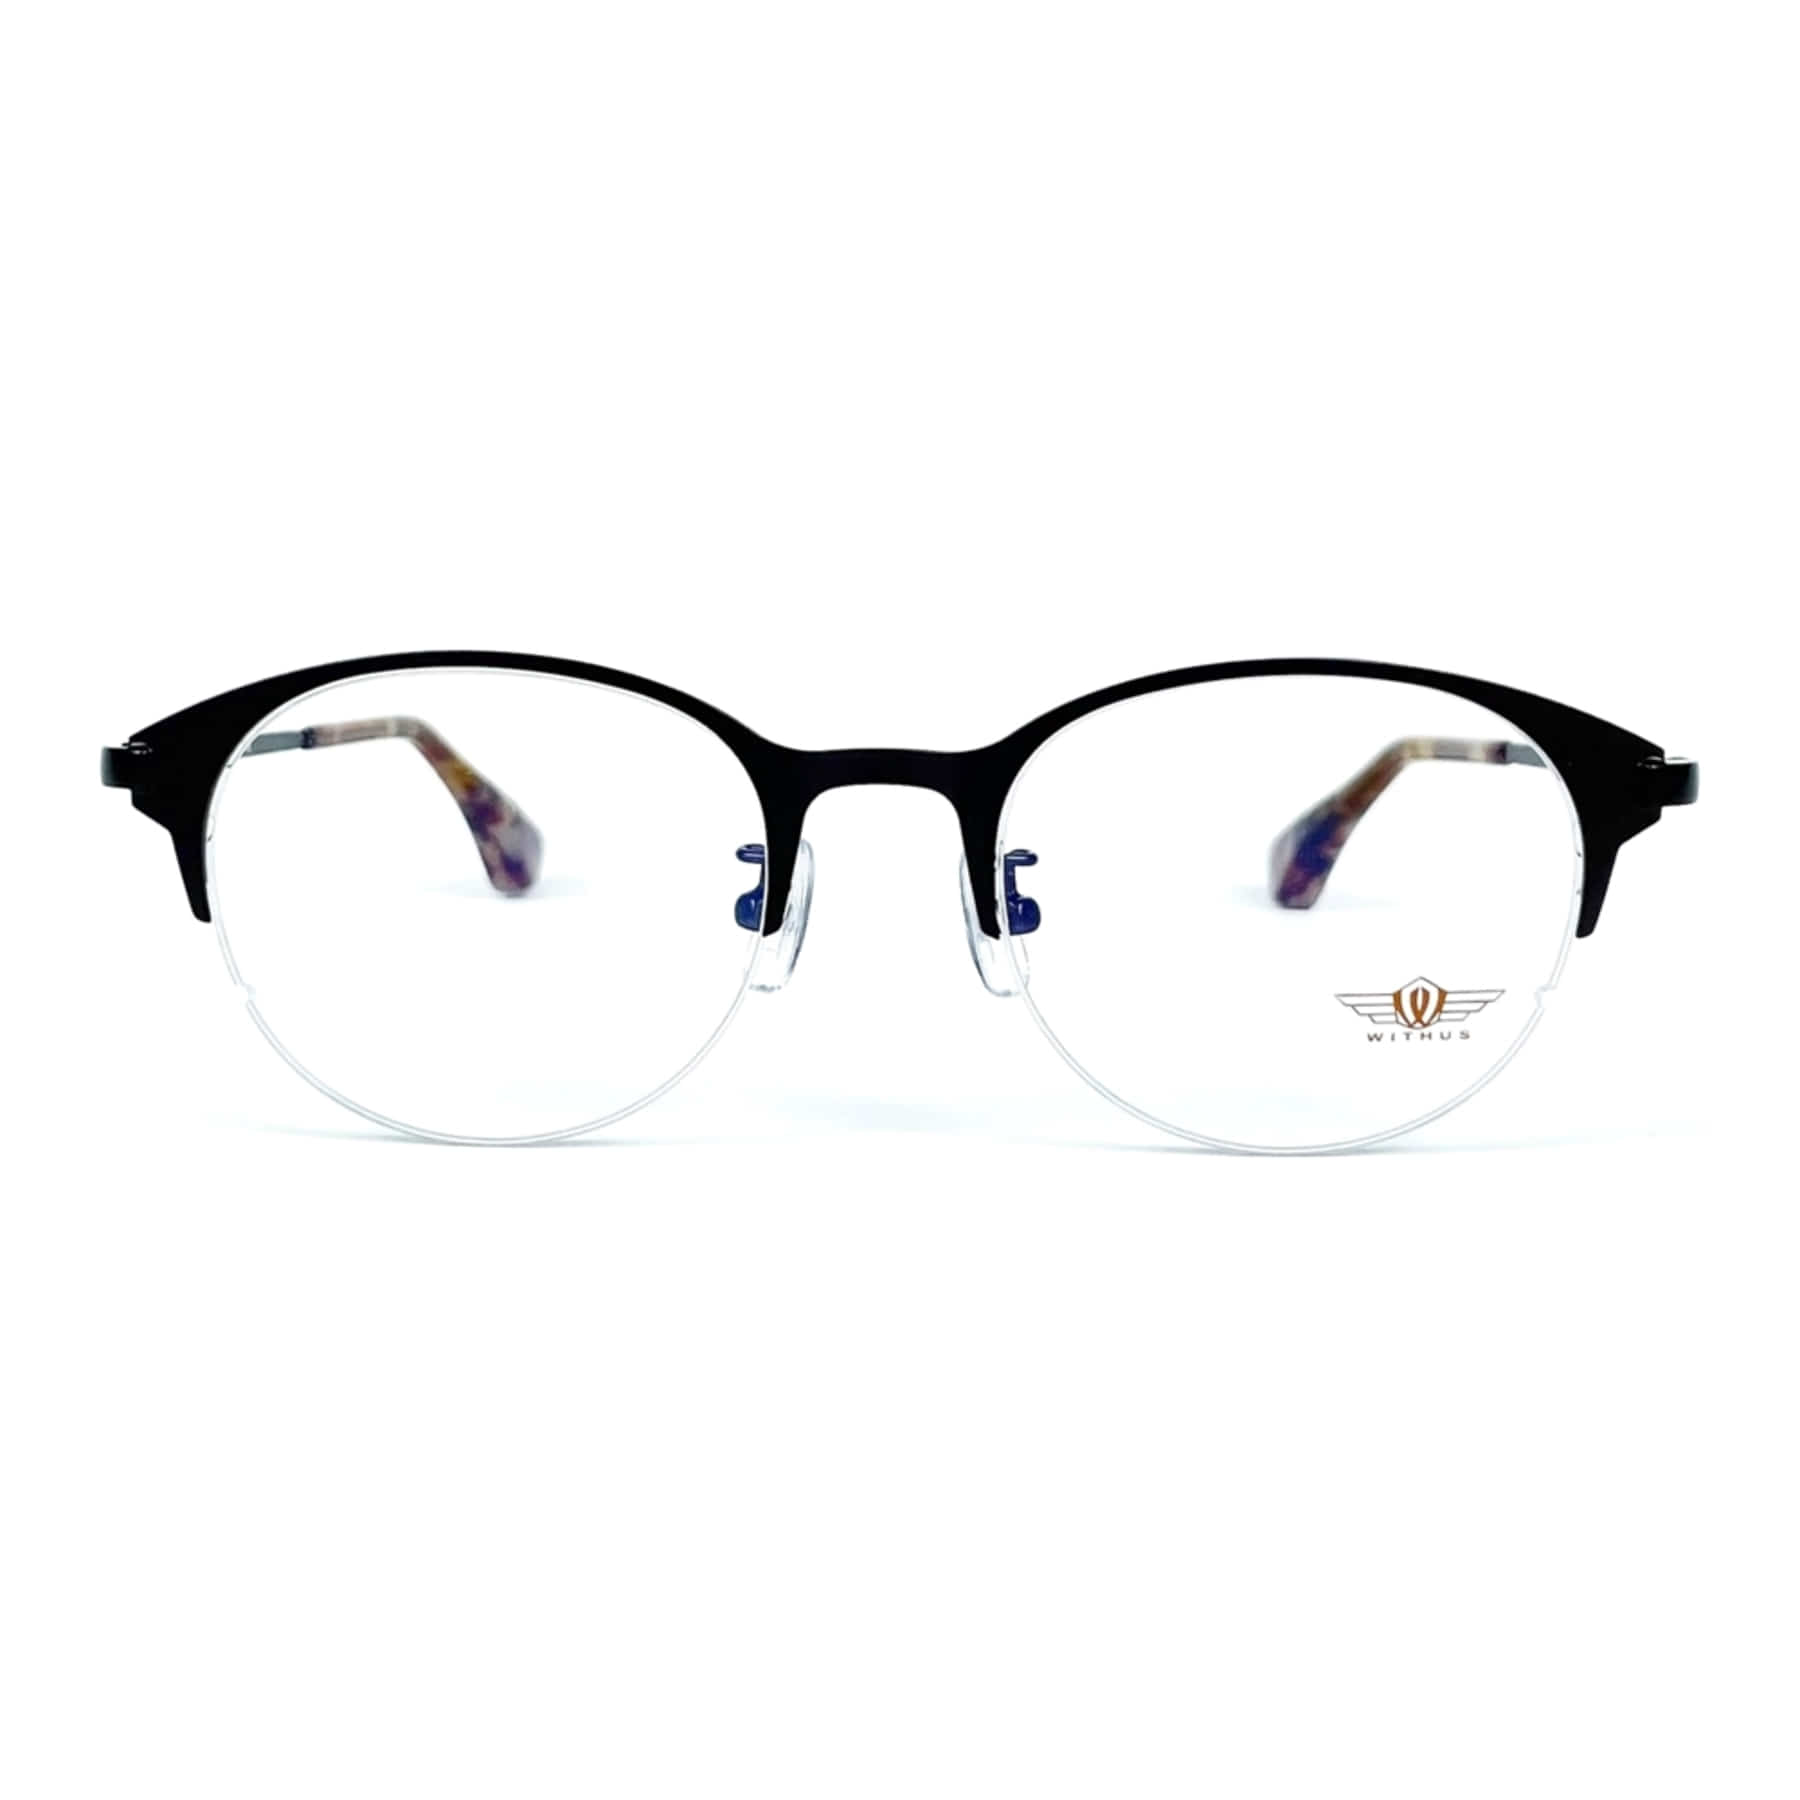 WITHUS-7354, Korean glasses, sunglasses, eyeglasses, glasses